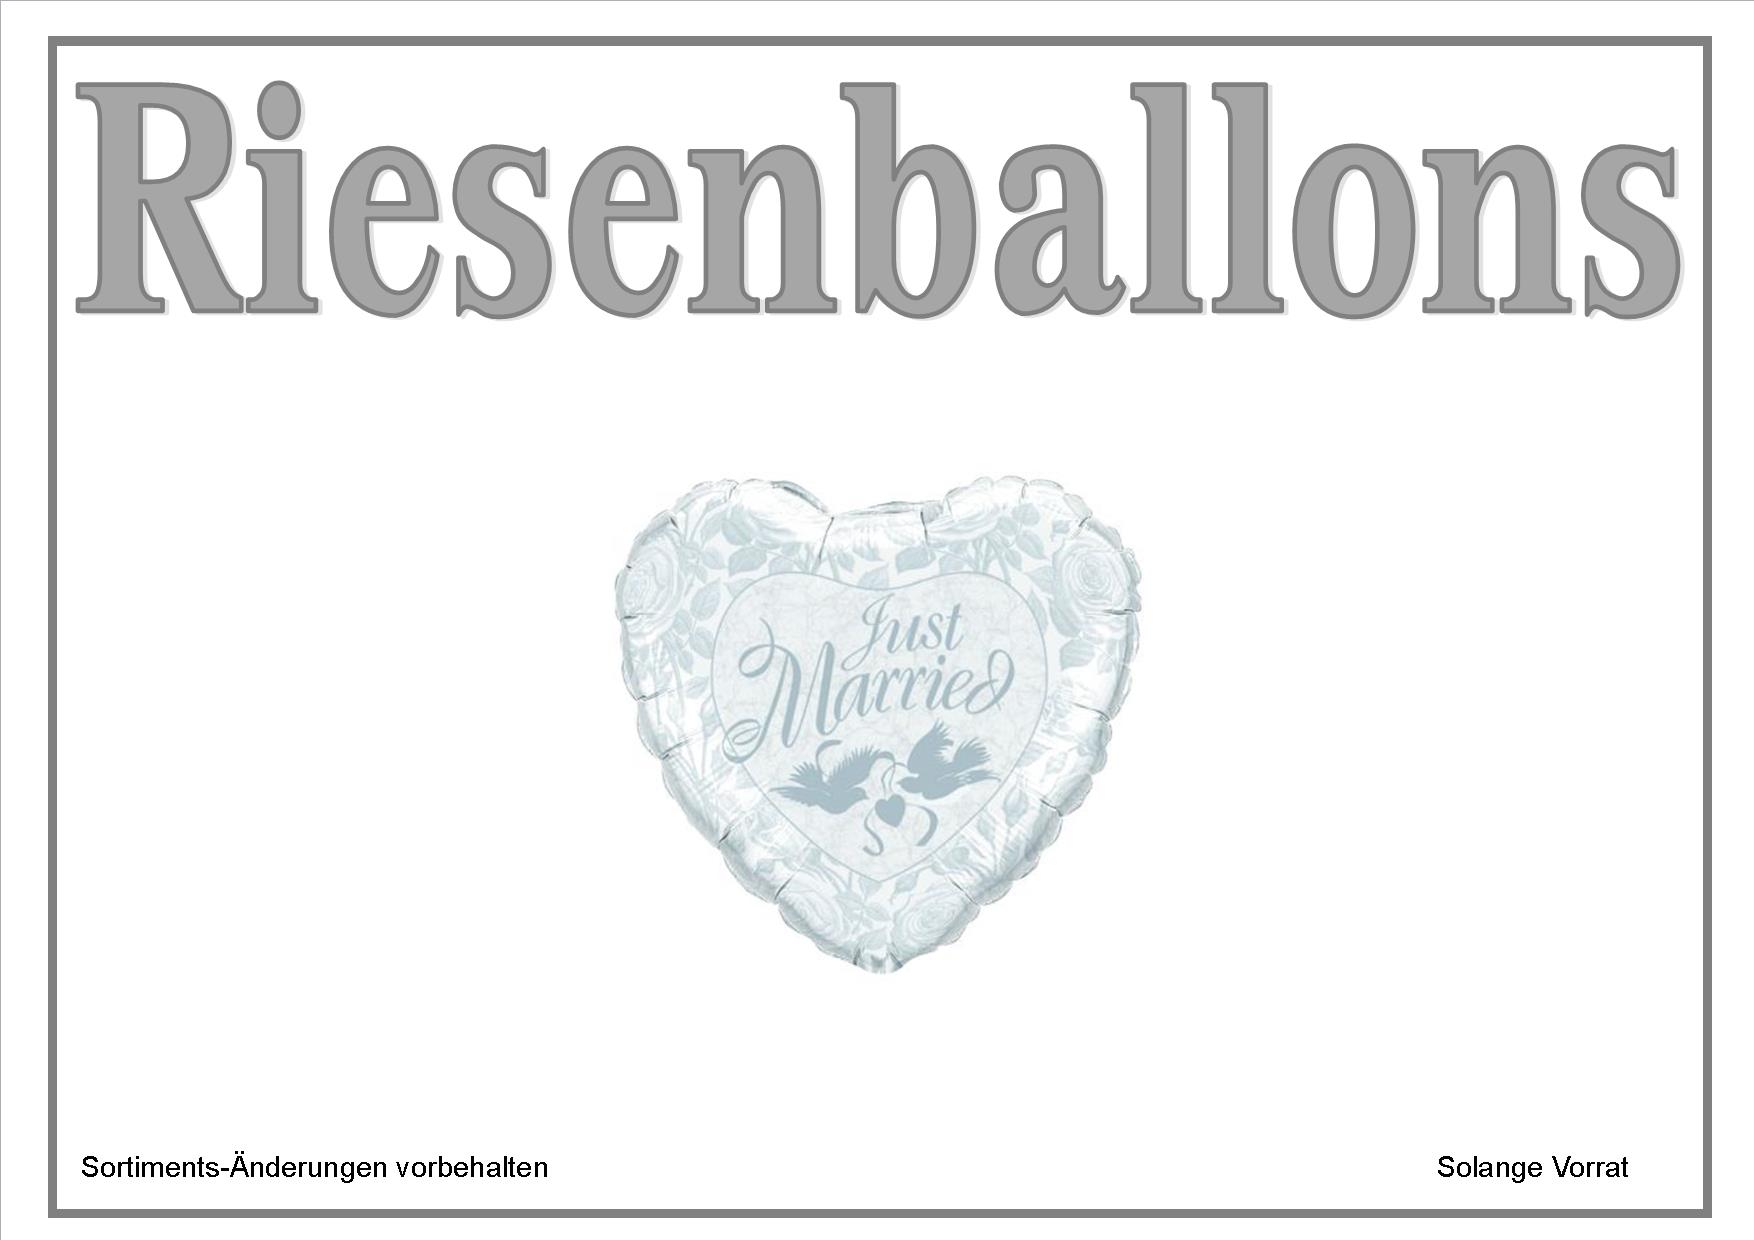 Hochzeits-Ballons Seite 12